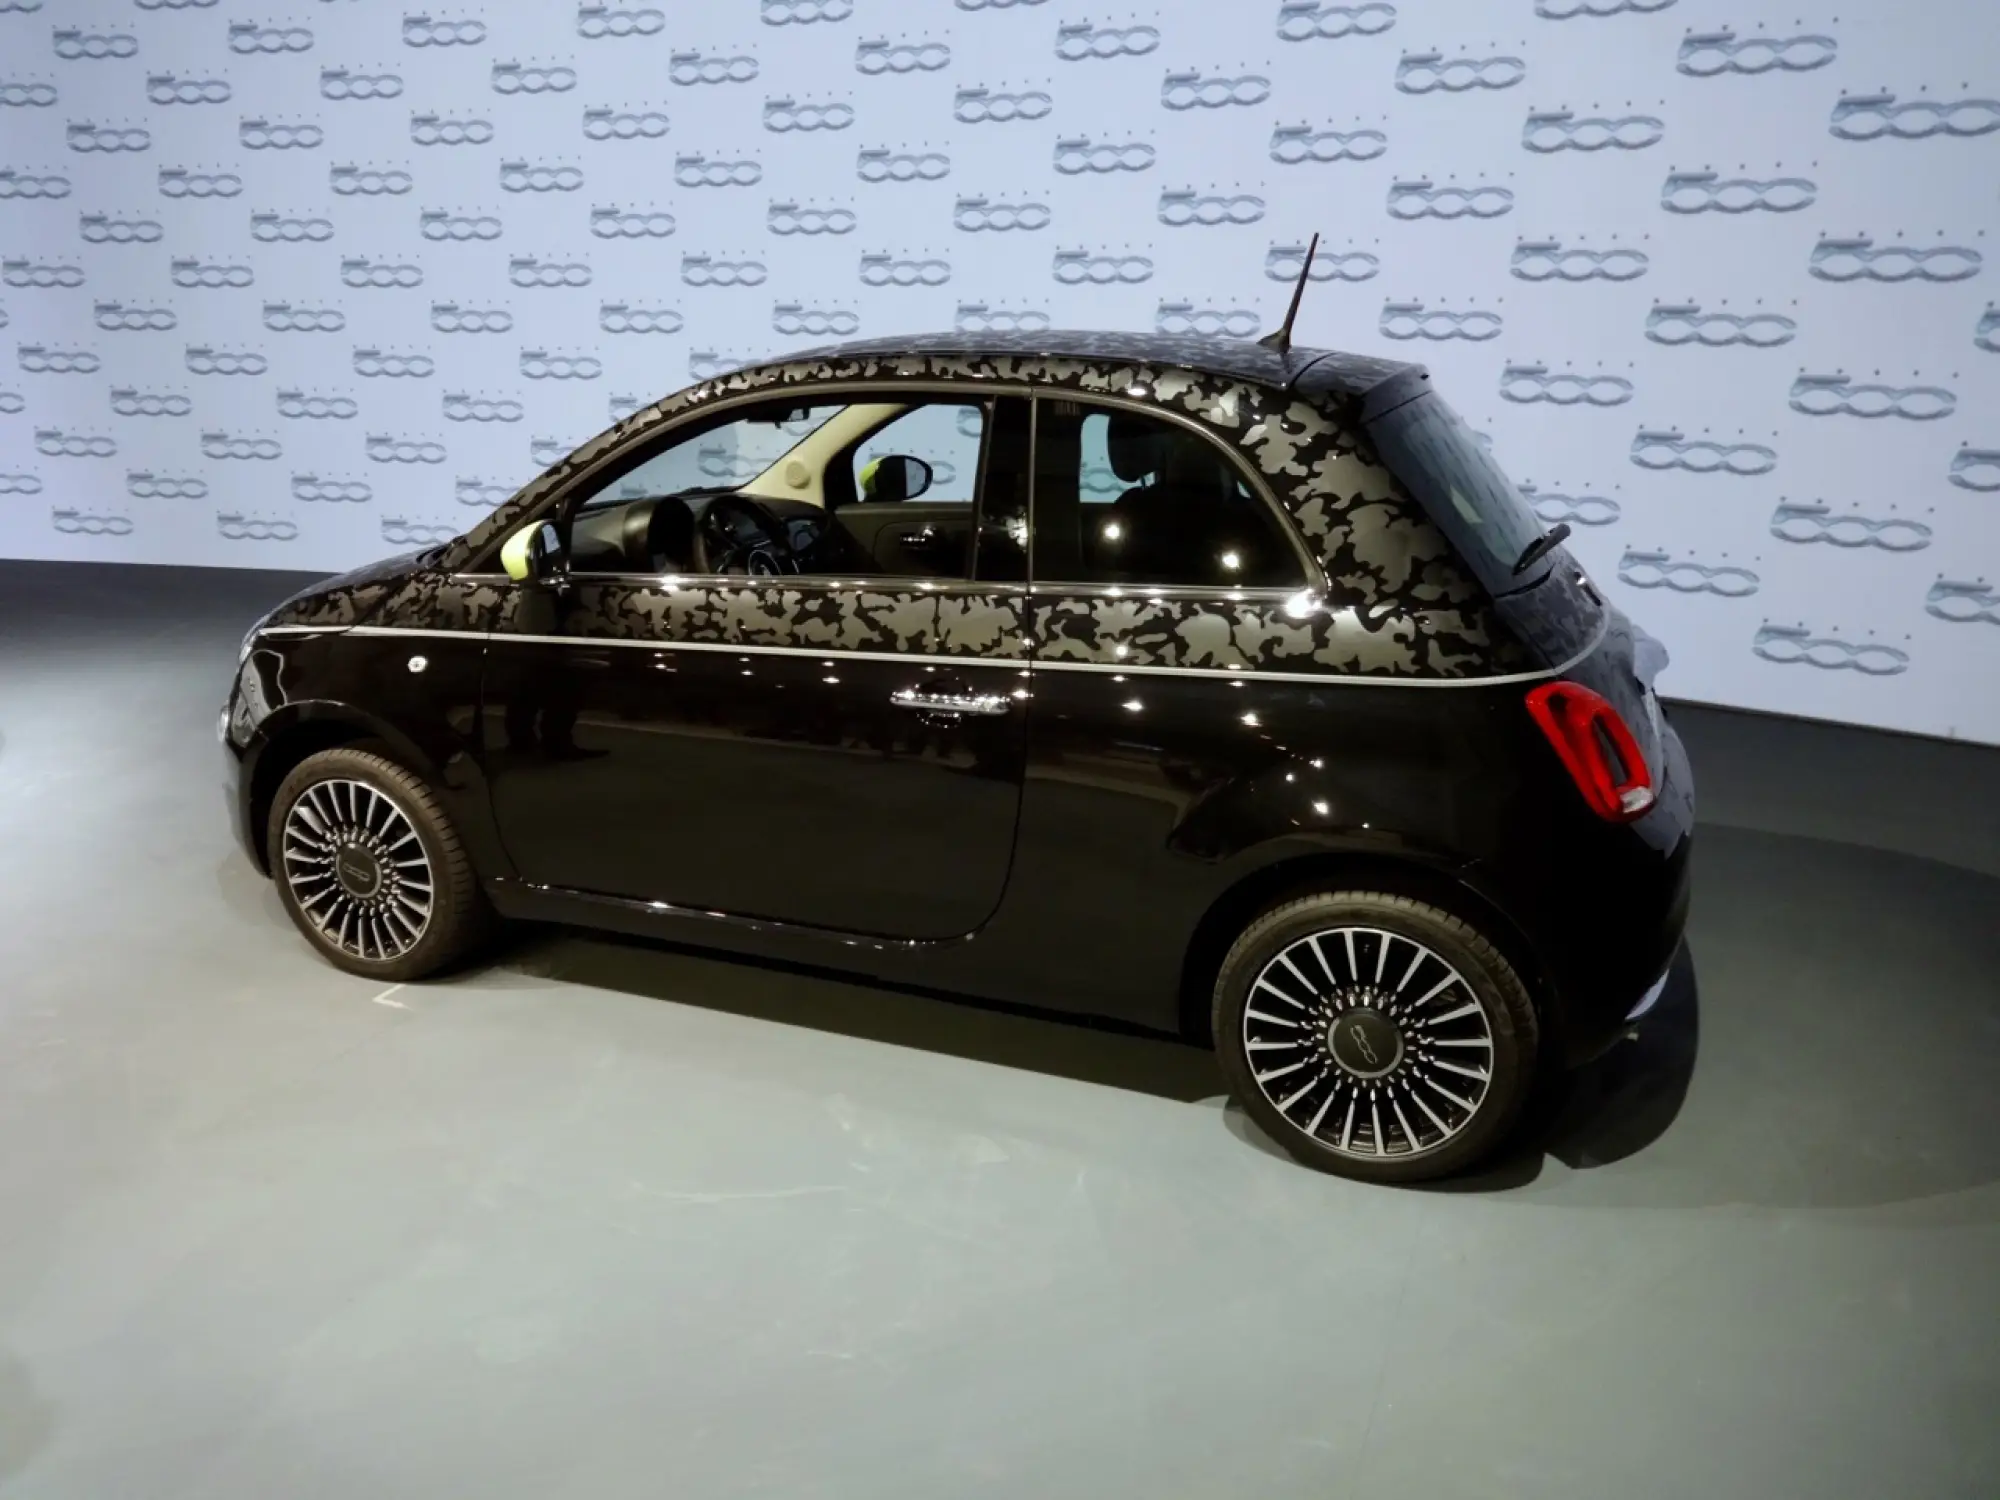 Fiat 500 MY 2015 - Primo Contatto - 13